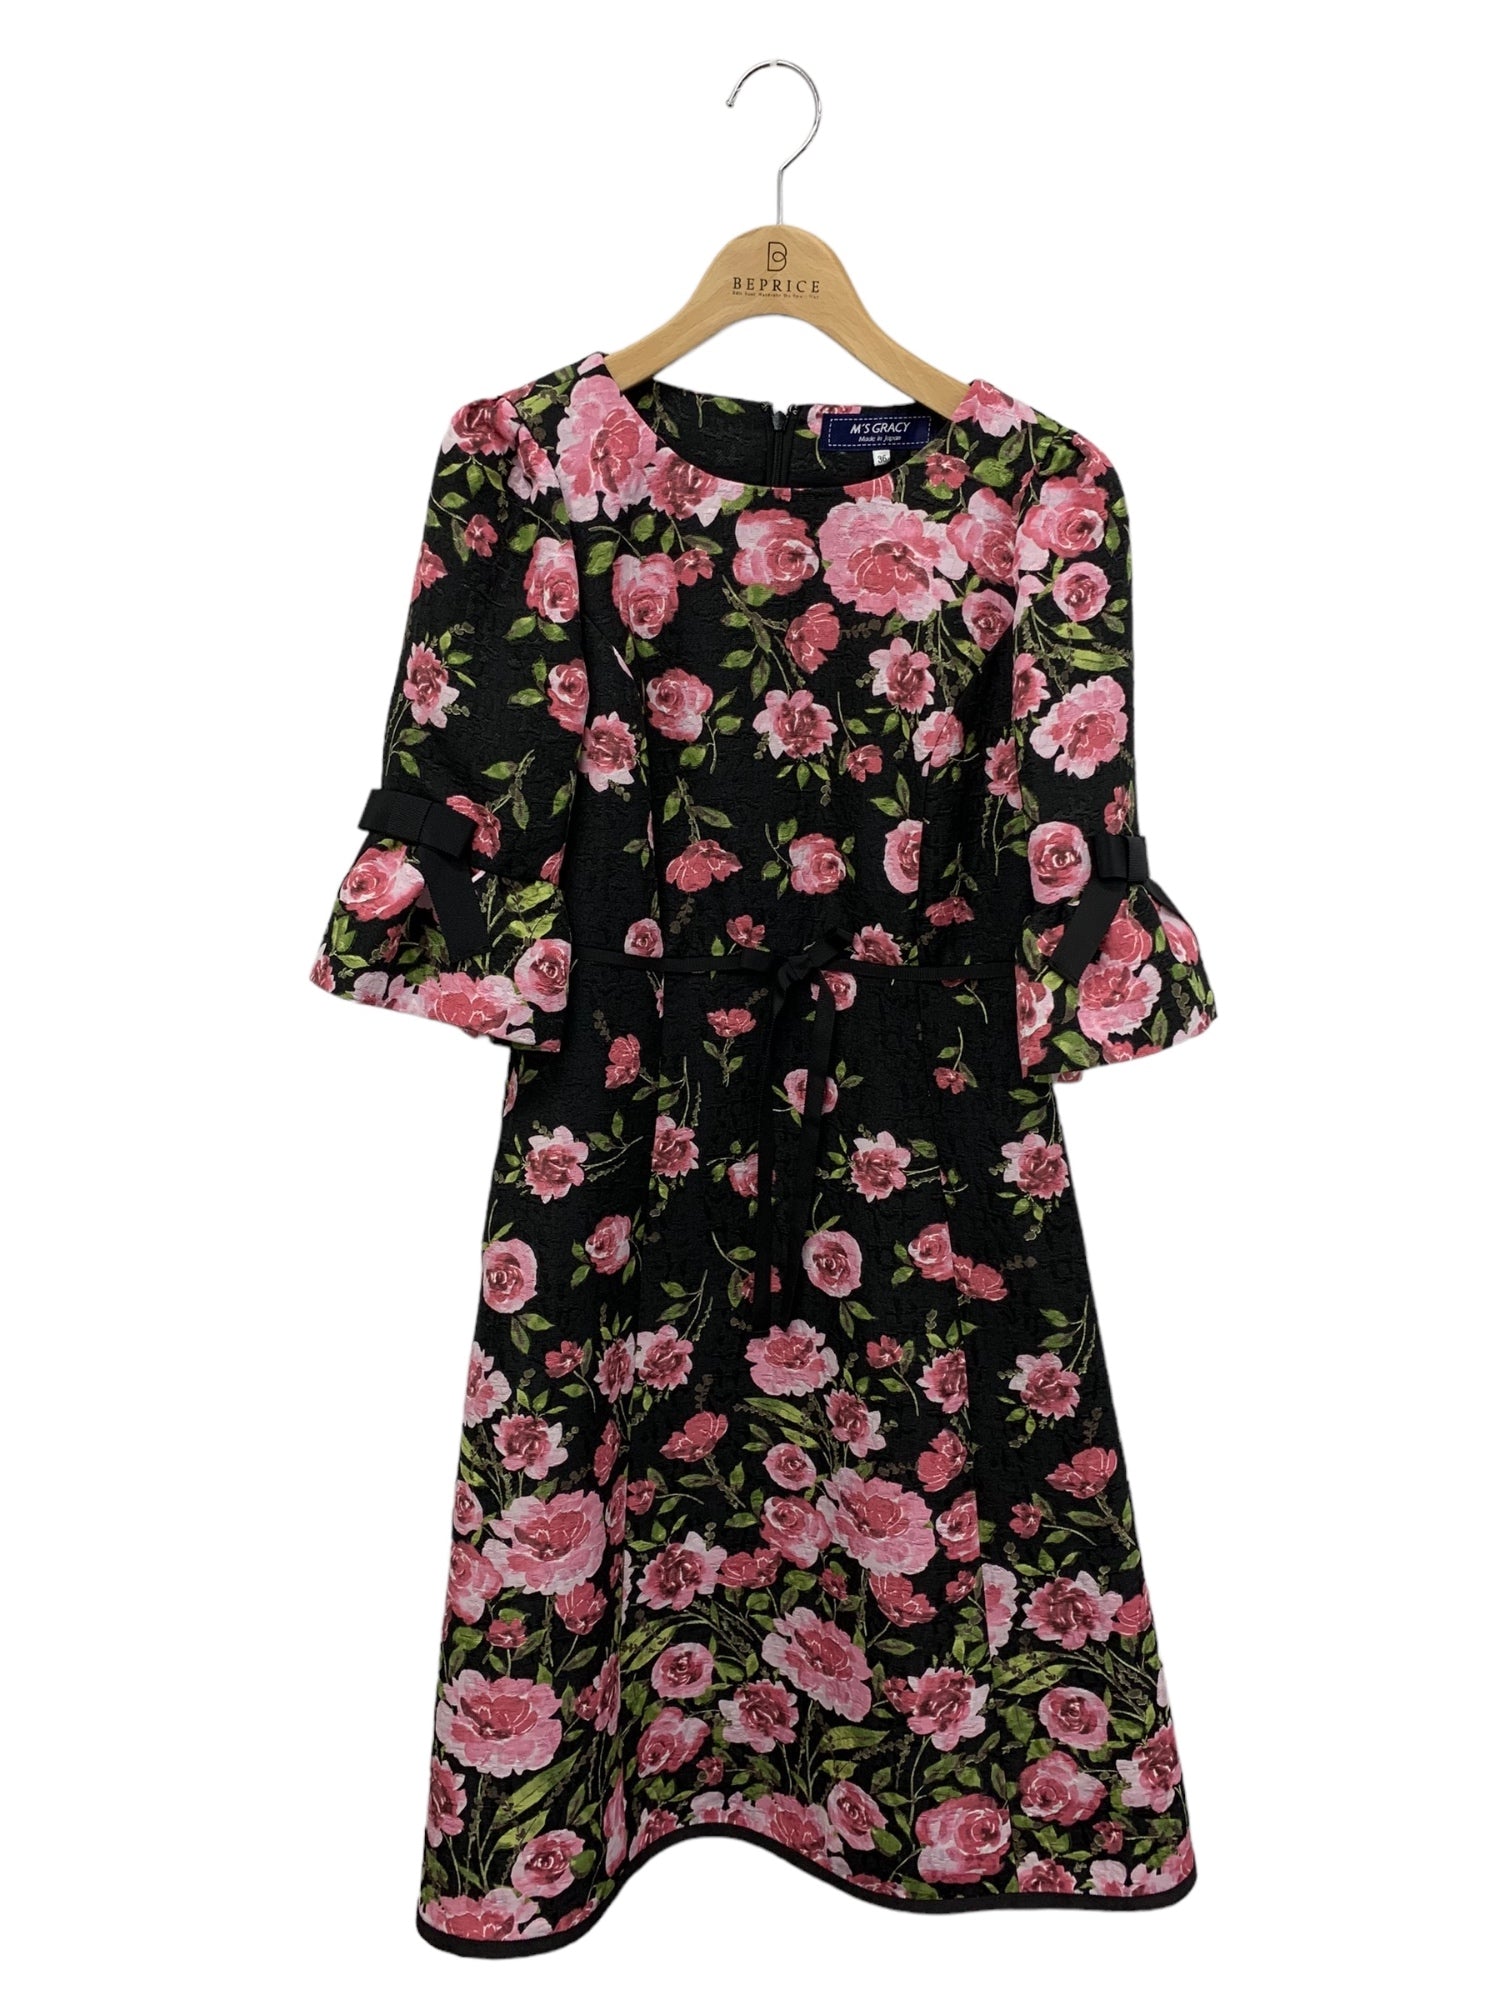 エムズグレイシー ピンクローズドレス 211512 ワンピース 36 ブラック フラワーモチーフ | 中古ブランド品・古着通販ビープライス